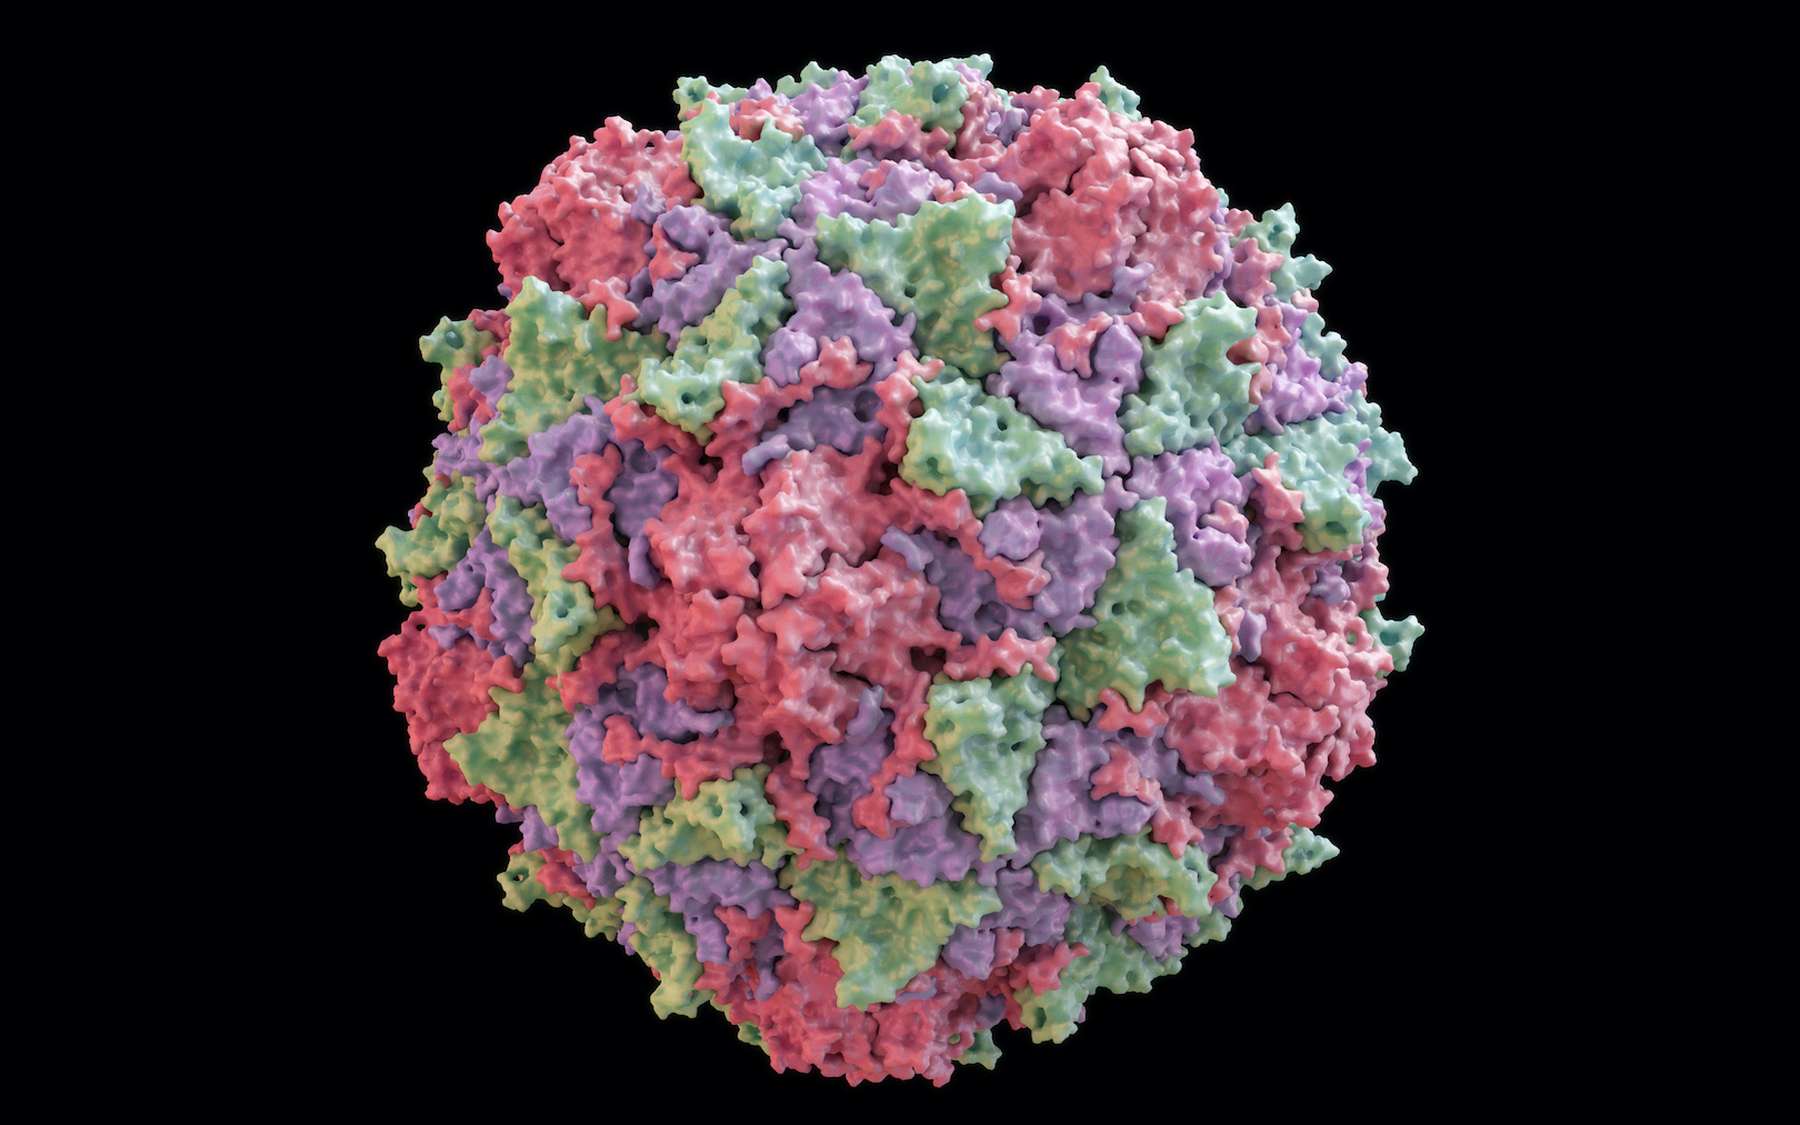 Un poliovirus dérivé de la souche vaccinale PV2 a été isolé dans les égouts de Londres. © Yabusaka, Adobe Stock